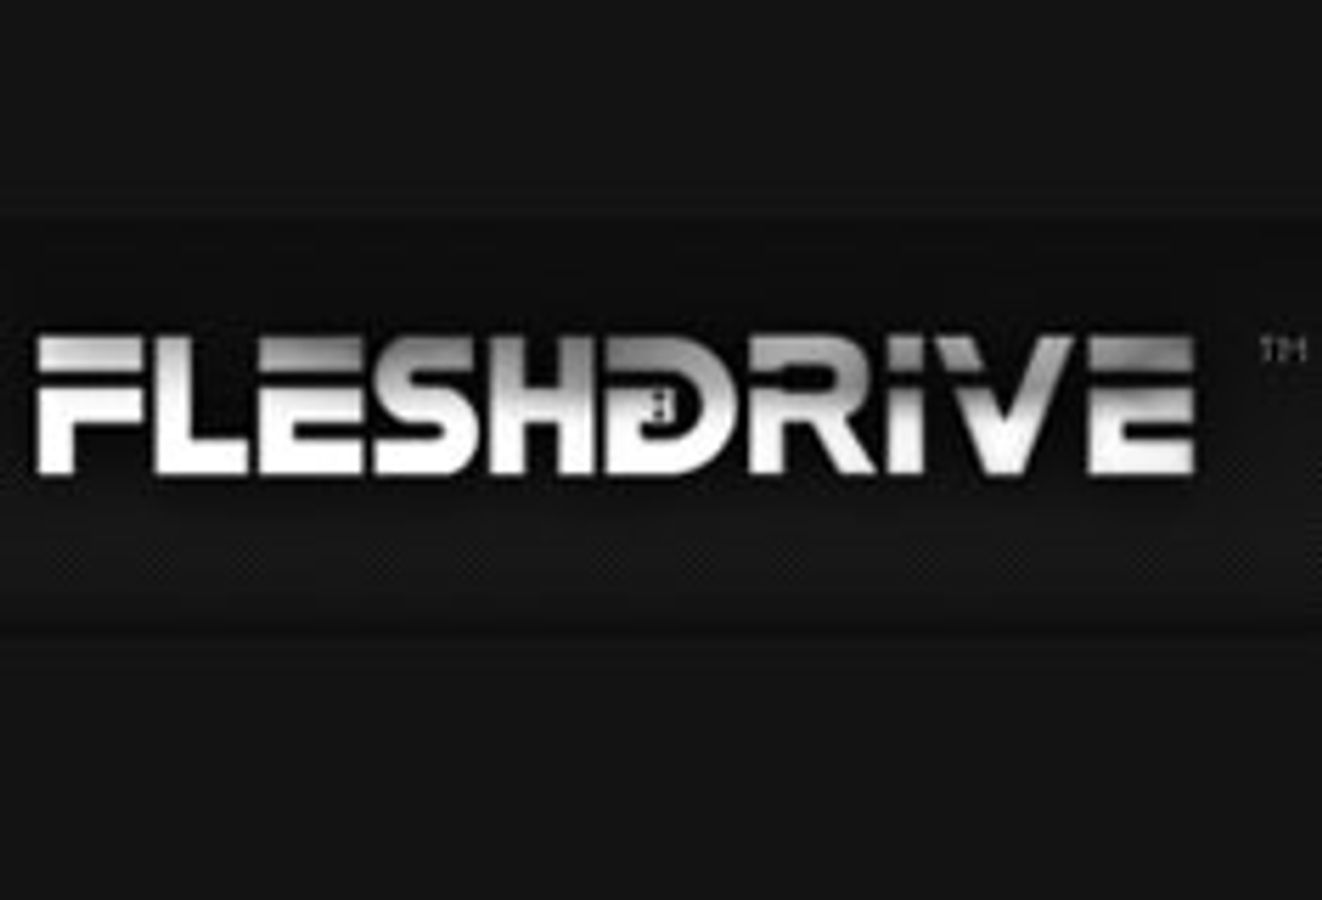 FleshDrive.com